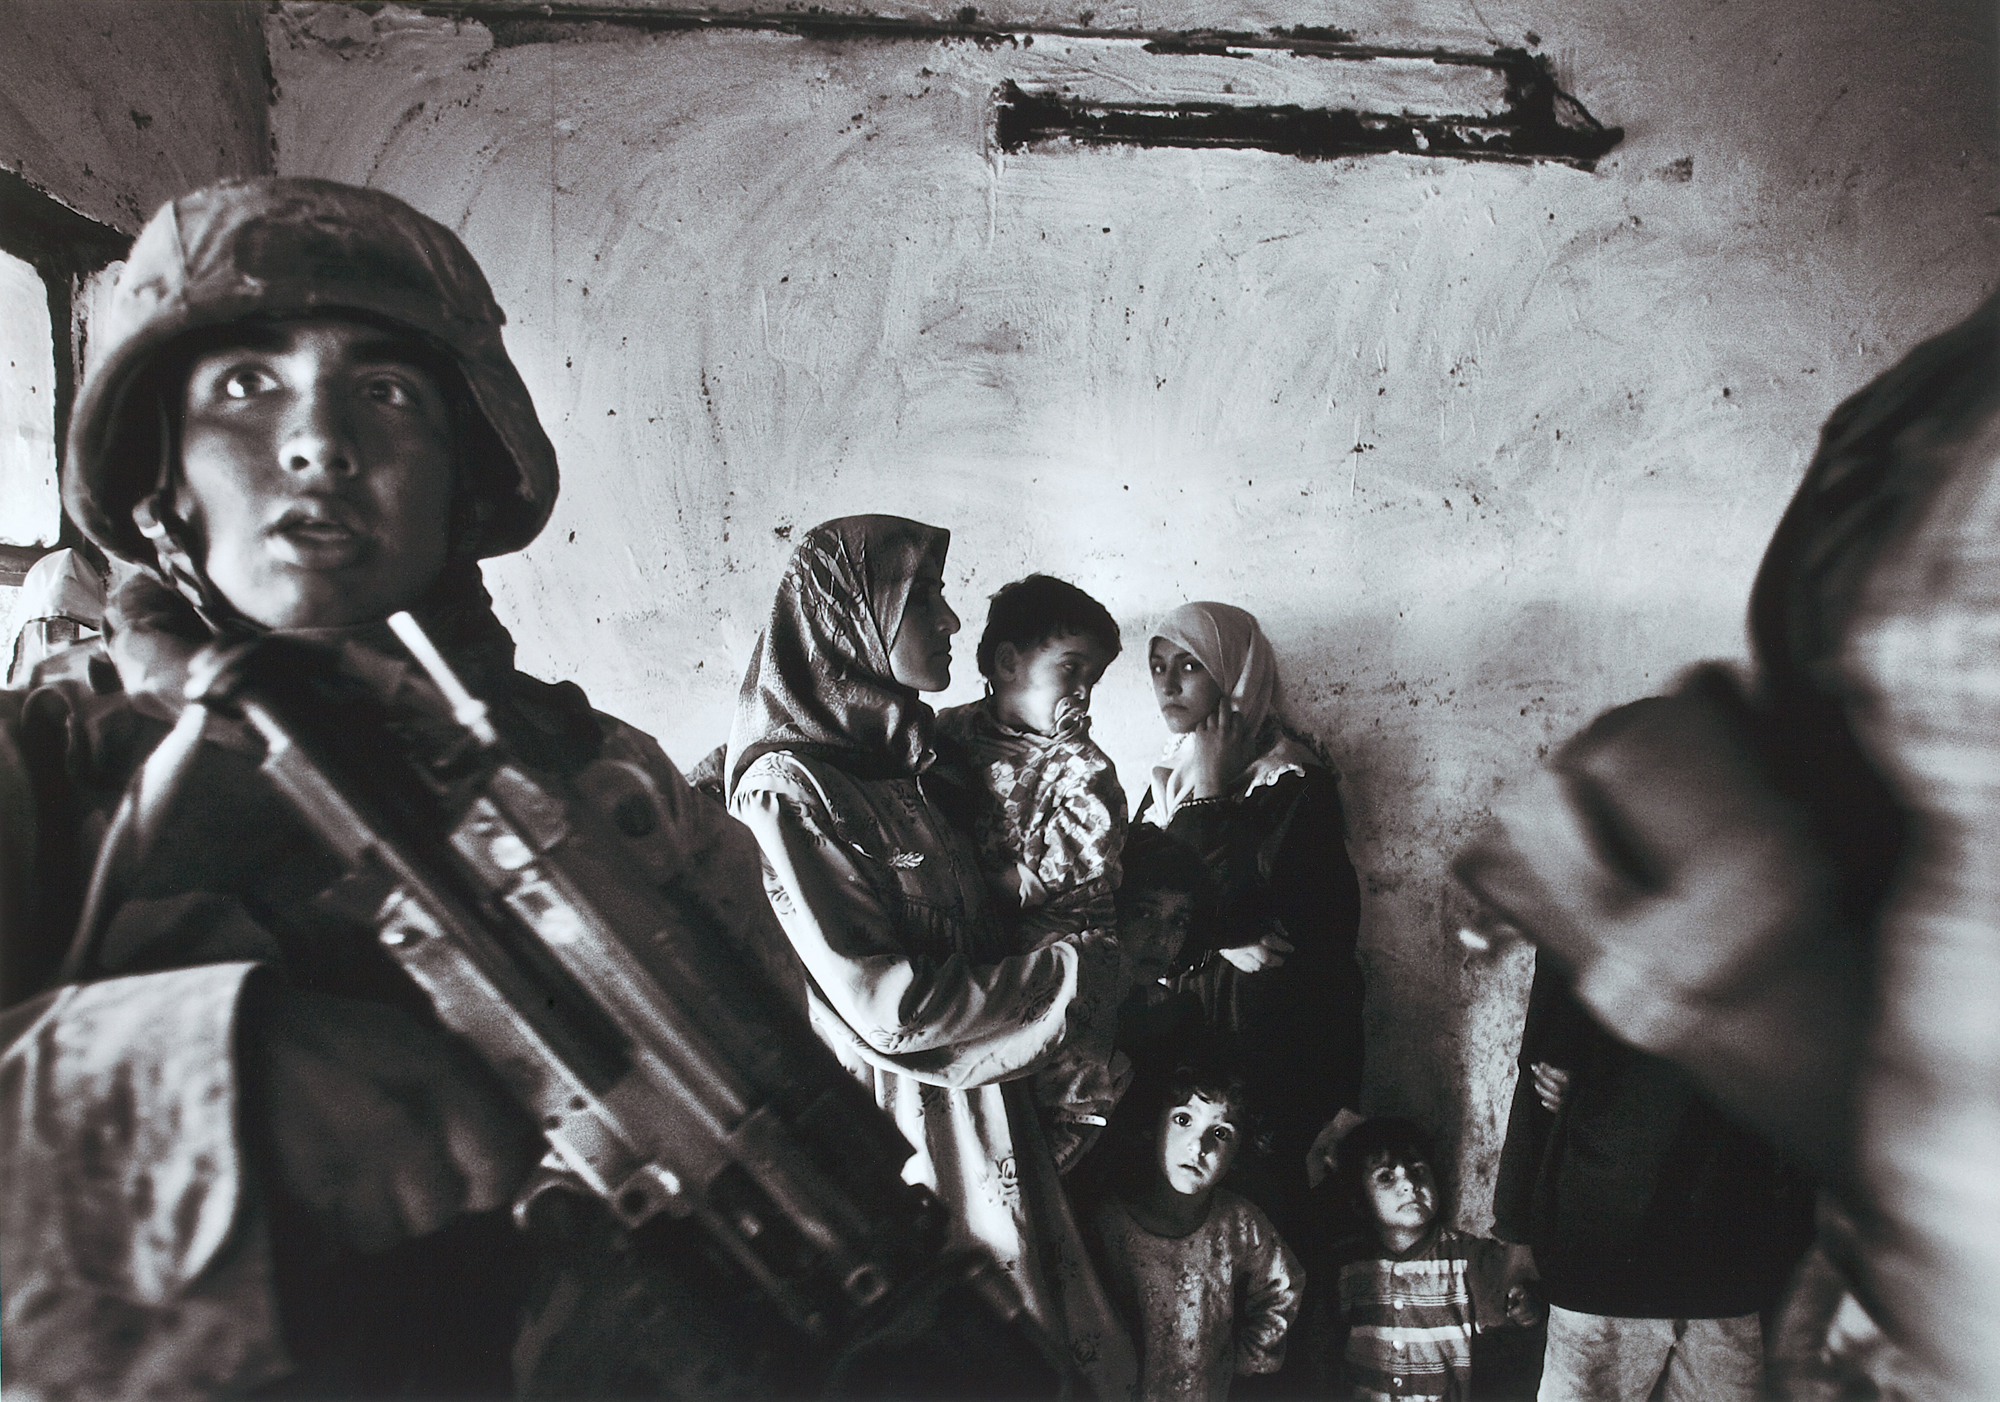 Anja Niedringhaus Amerikanische Marineinfanteristen führen eine Razzia im Haus eines irakischen Abgeordneten im Stadtteil Abu Ghraib durch; Bagdad, Irak, November 2004 Pigmentdruck auf Barytpapier 29,7 x 42 cm Kunstpalast © picture alliance / AP Images